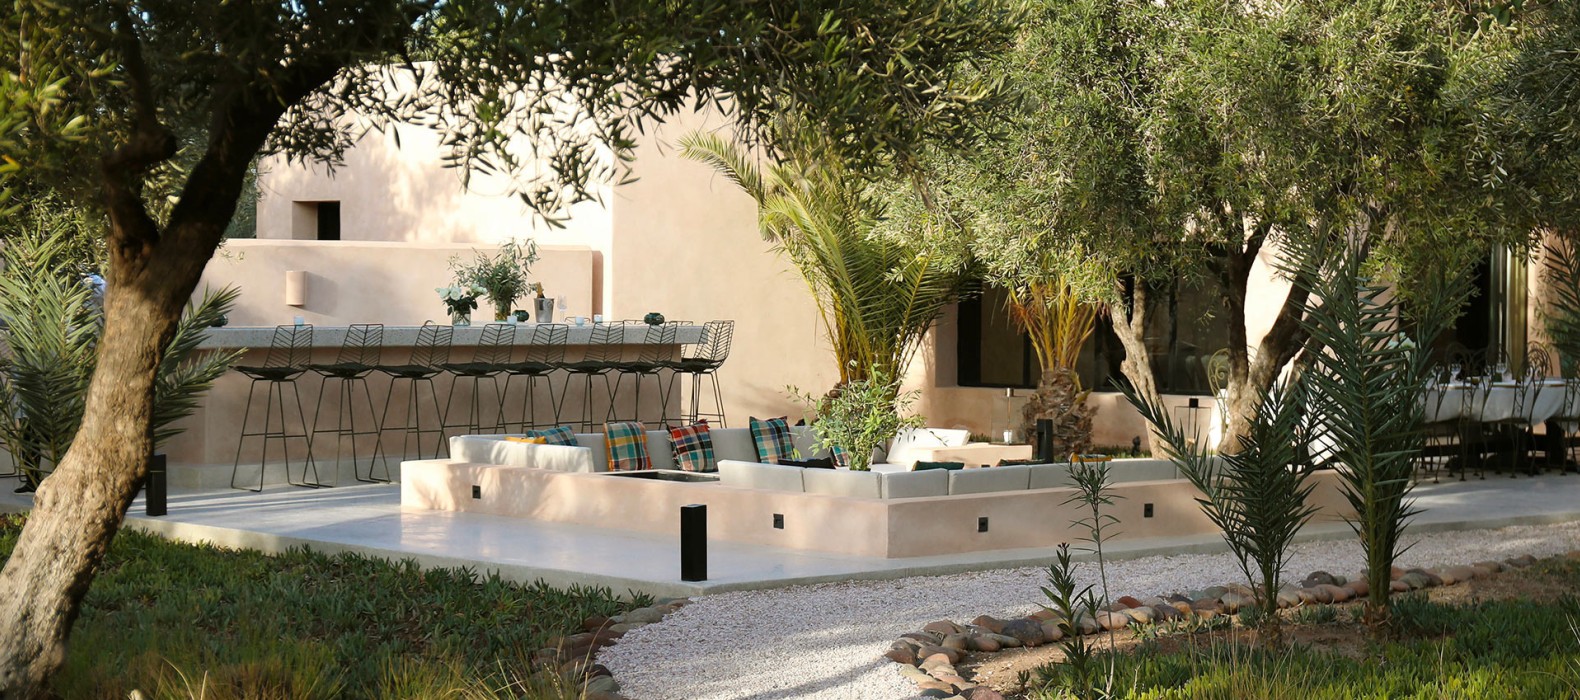 Exterior chill area of Villa Shakir in Marrakech